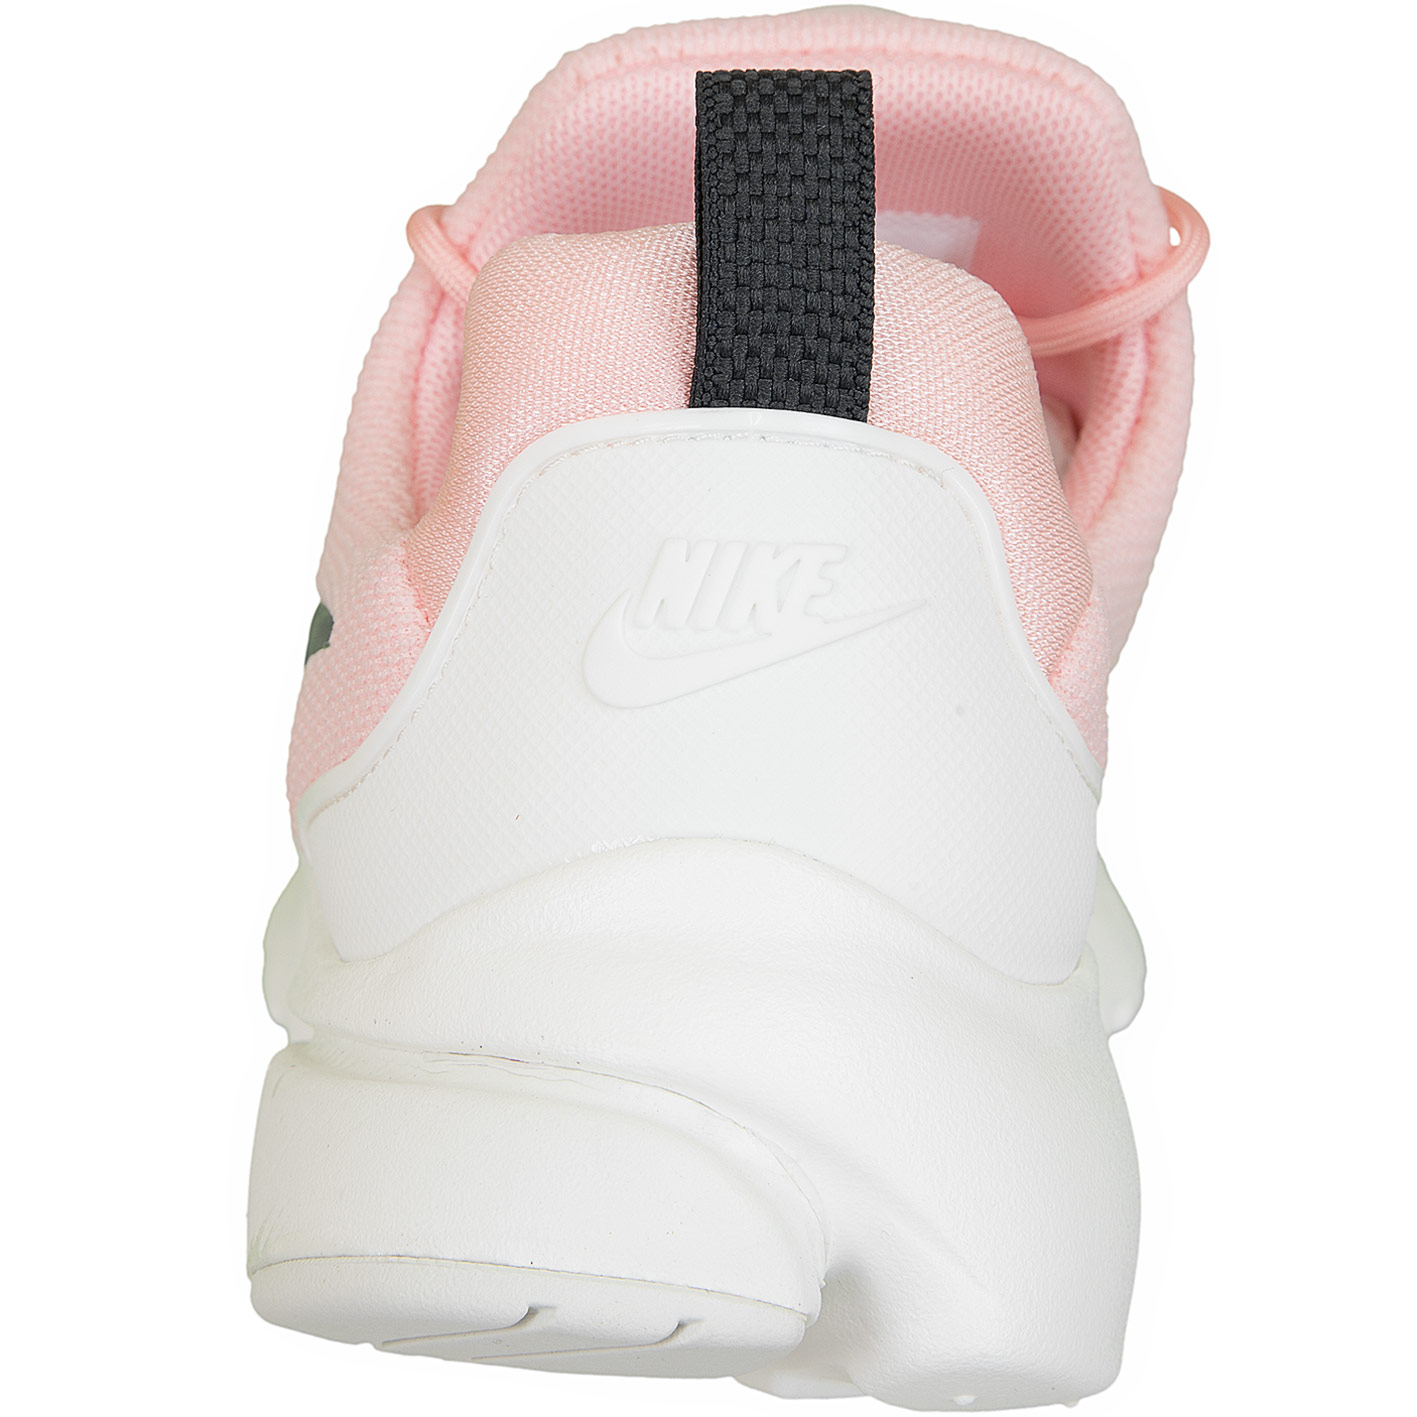 ☆ Nike Damen Sneaker Presto Fly pink/weiß - hier bestellen!